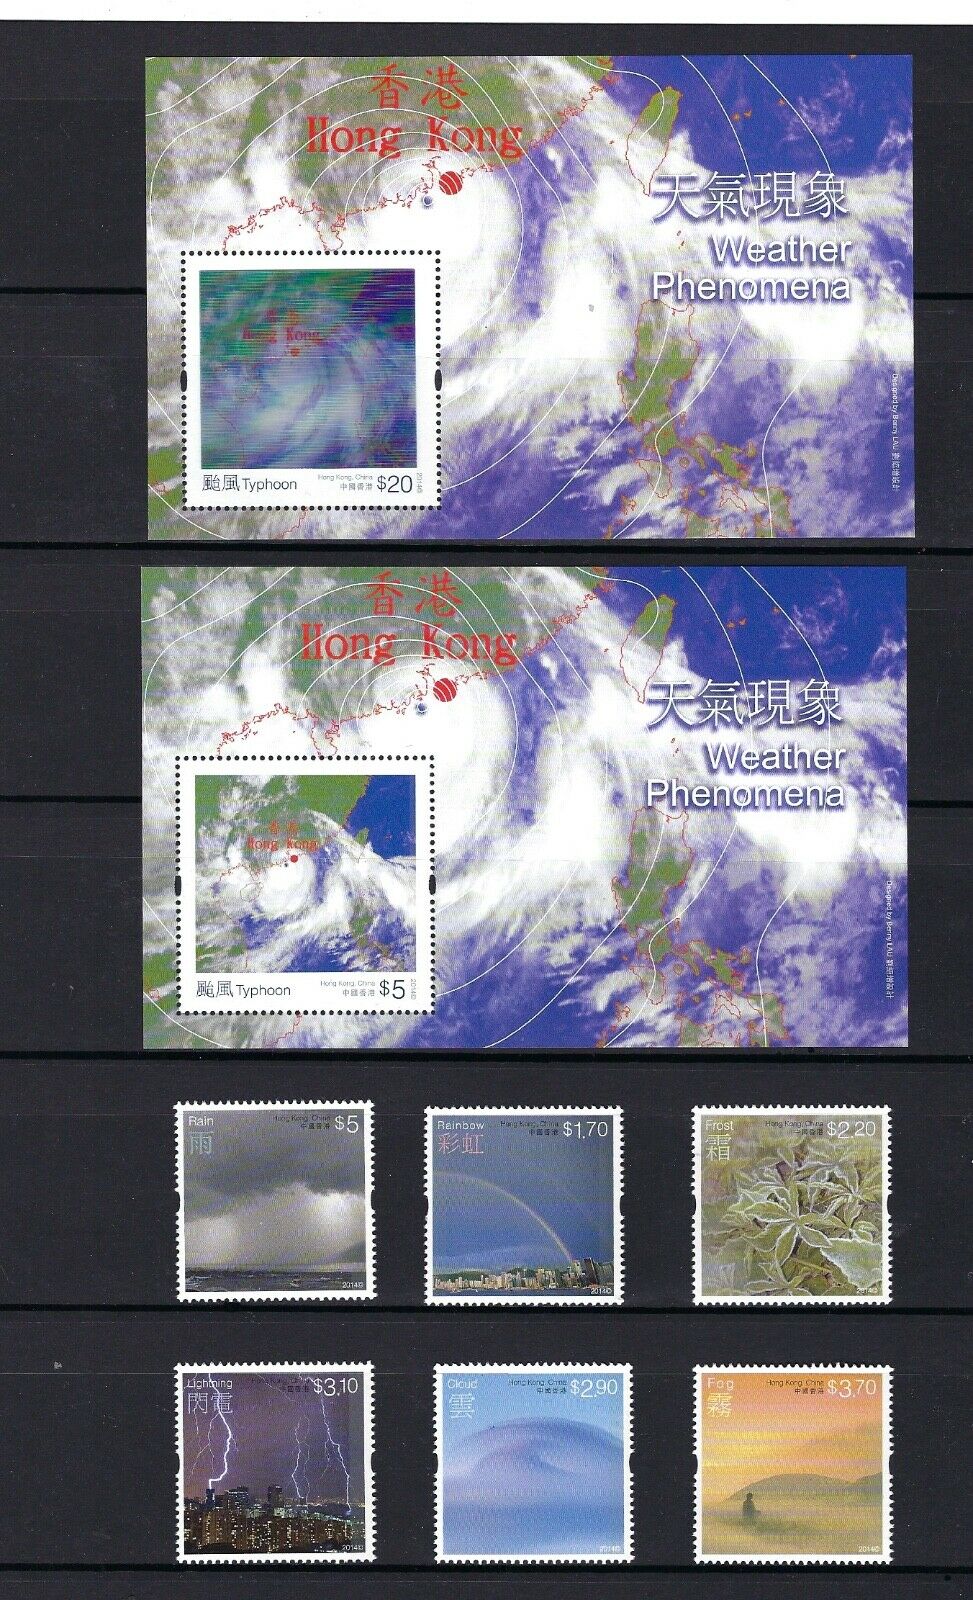 China Hong Kong 2014 3d $20 Hologram Weather Phenomena Typhoon Stamp Set